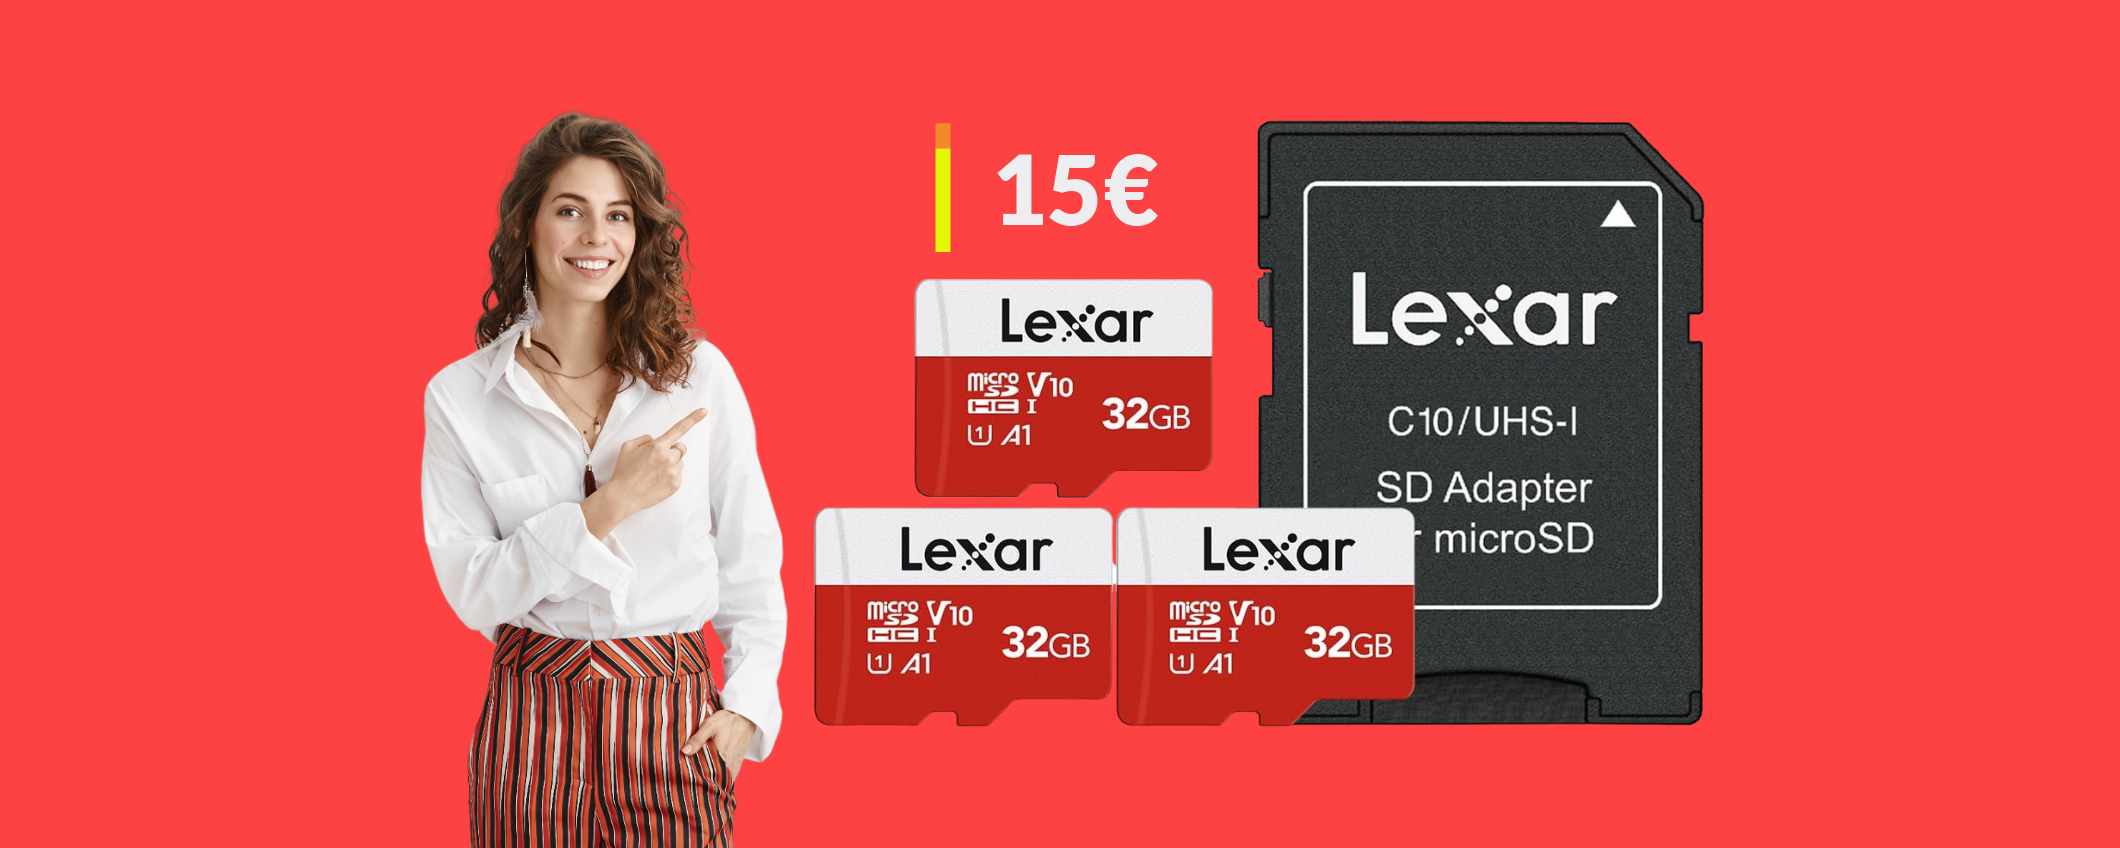 MicroSD Lexar 32GB: solo 15€ per averne TRE con l'adattatore